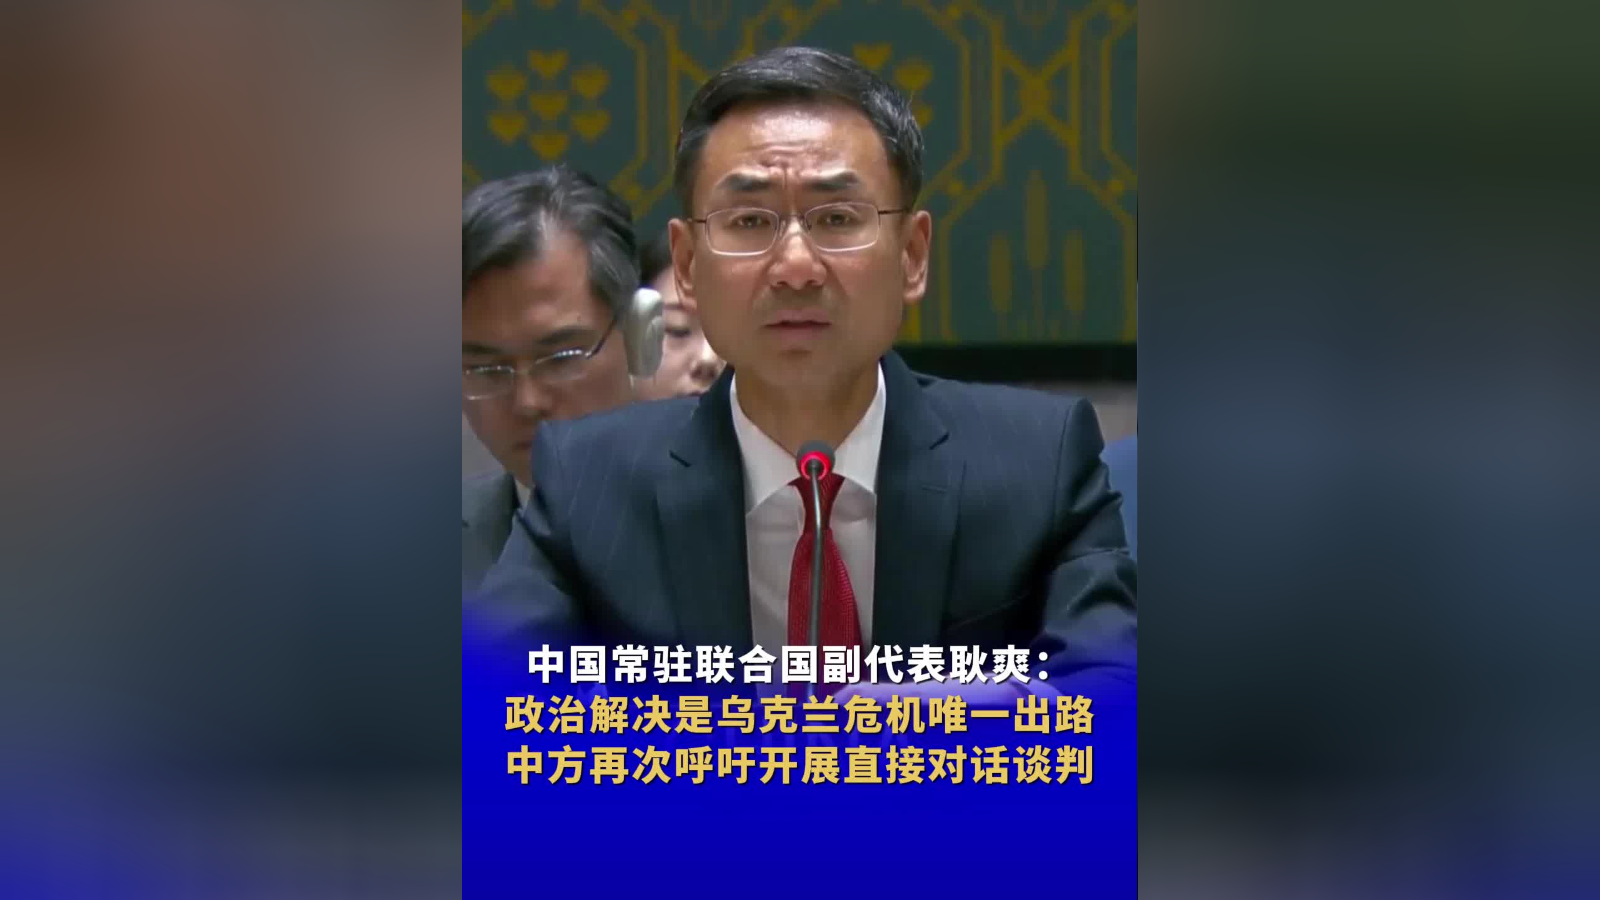 中国常驻联合国副代表耿爽:政治解决是乌克兰危机唯一出路 中方再次